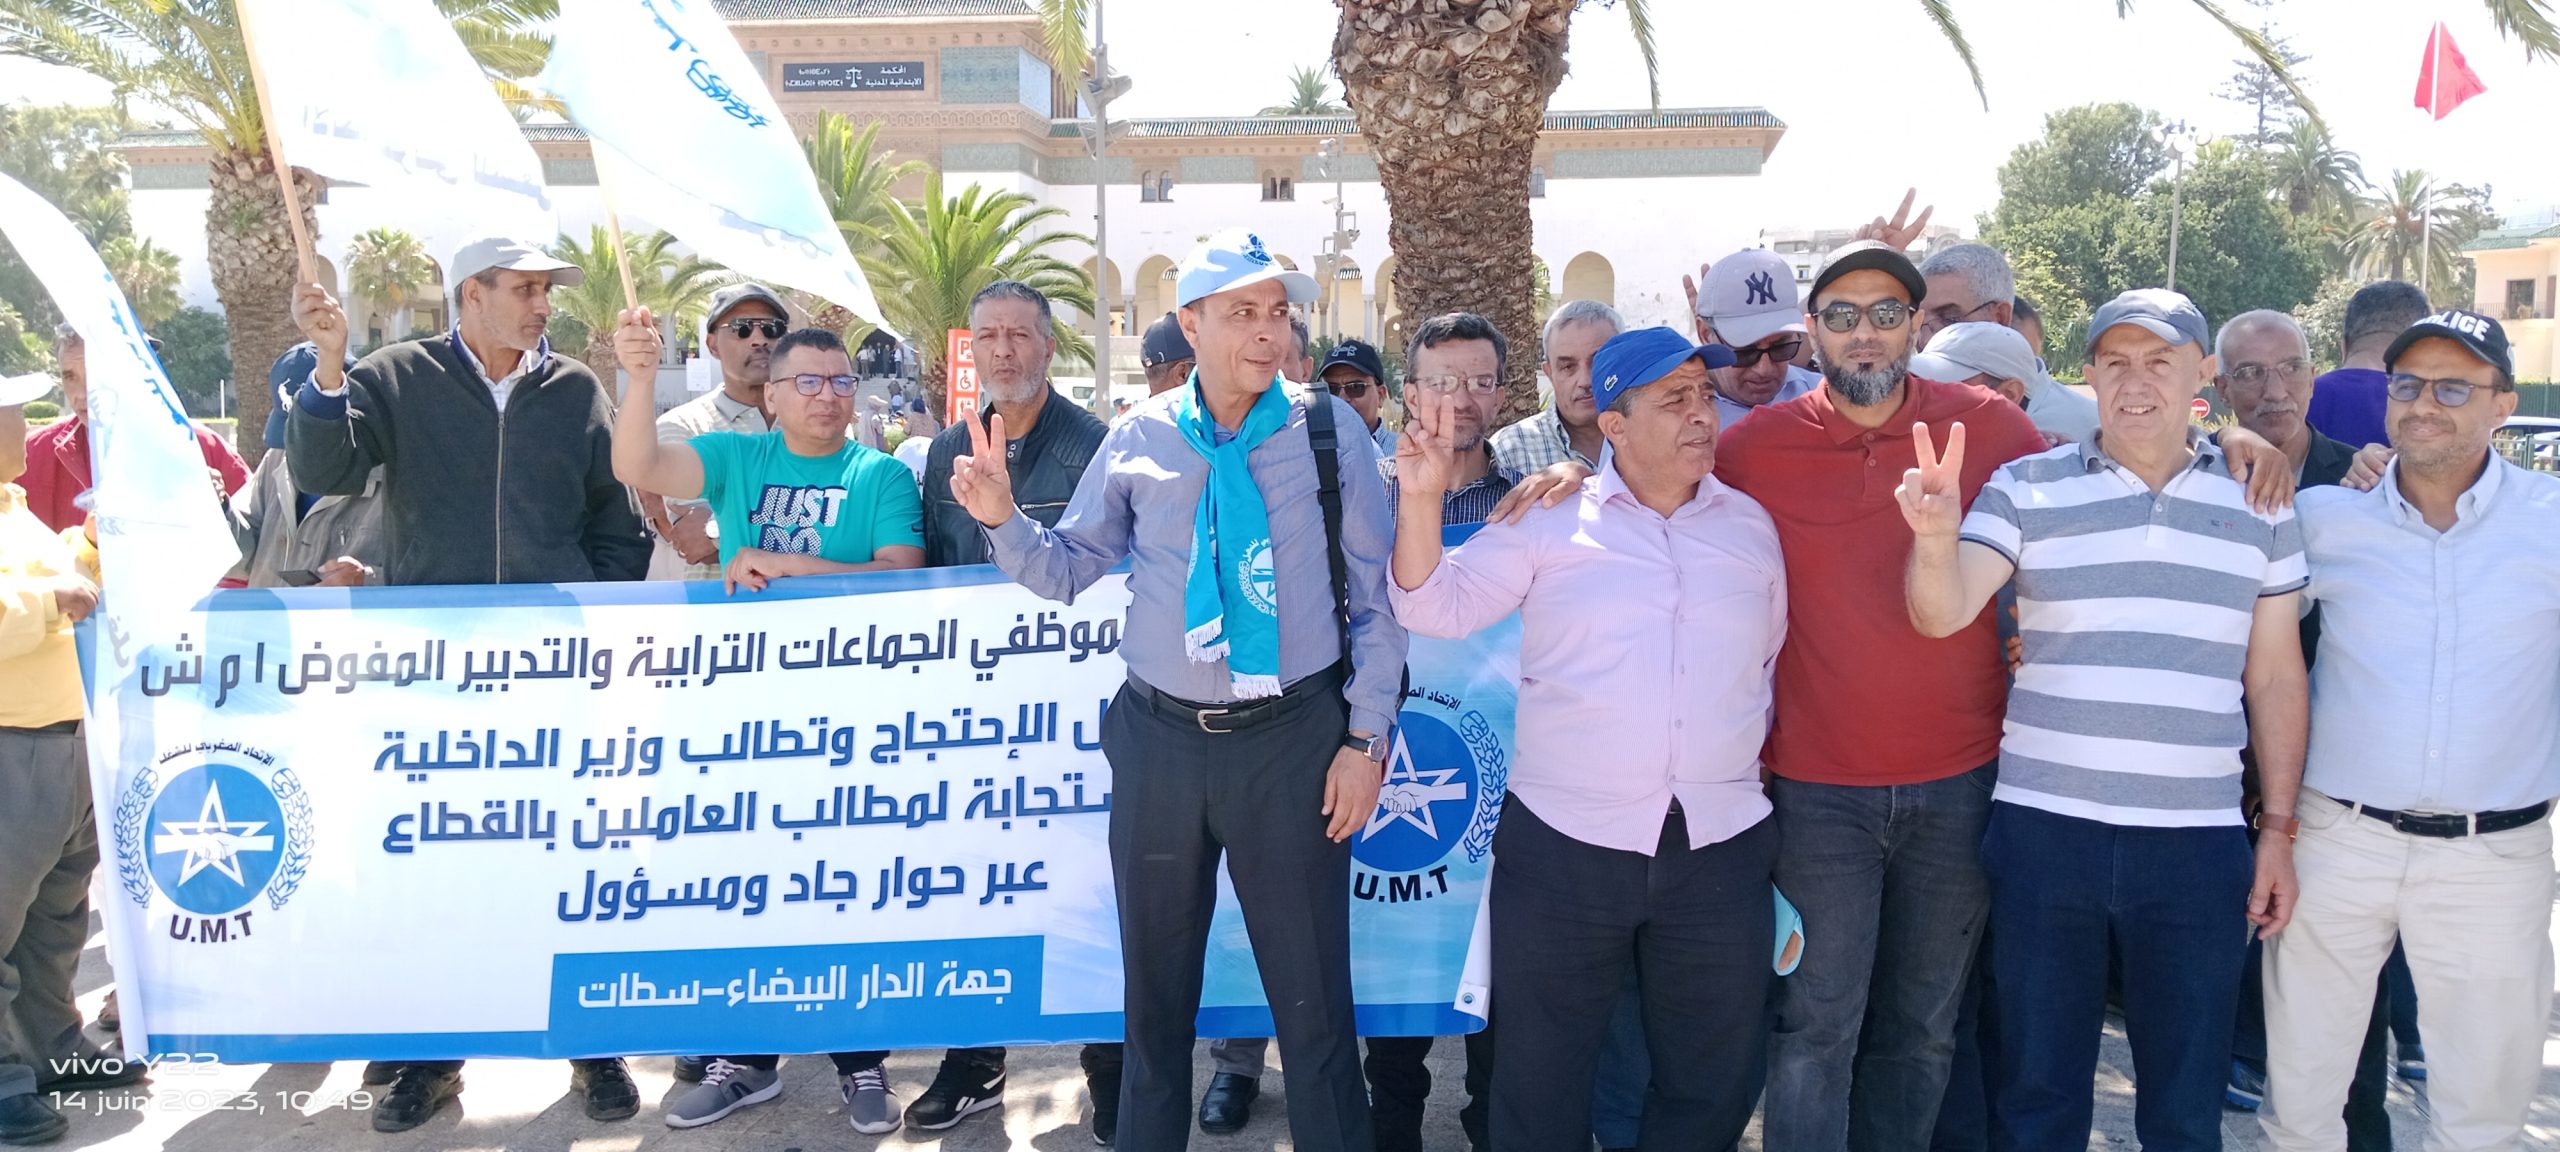 الاتحاد المغربي للشغل : نجاح اضراب موظفي الجماعات المحلية - AgadirToday